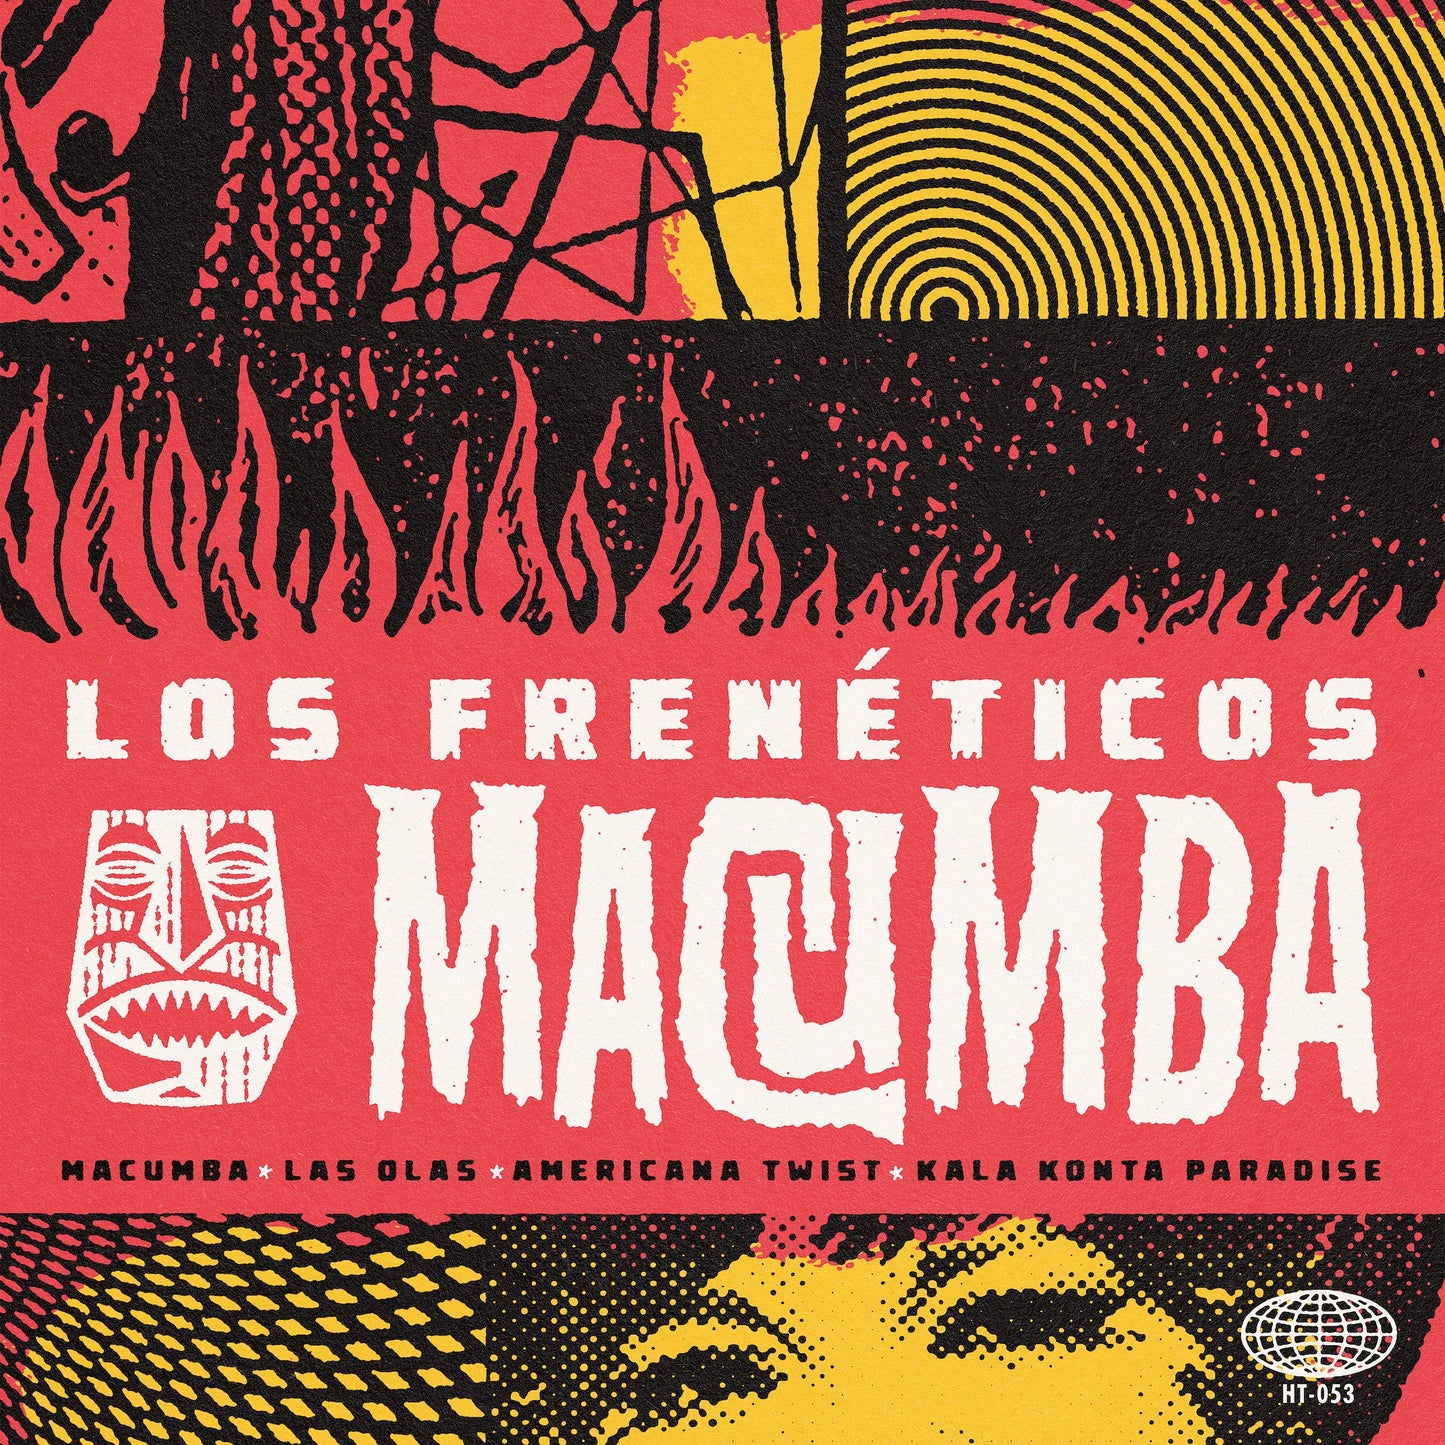 Los Frenéticos “Macumba” EP